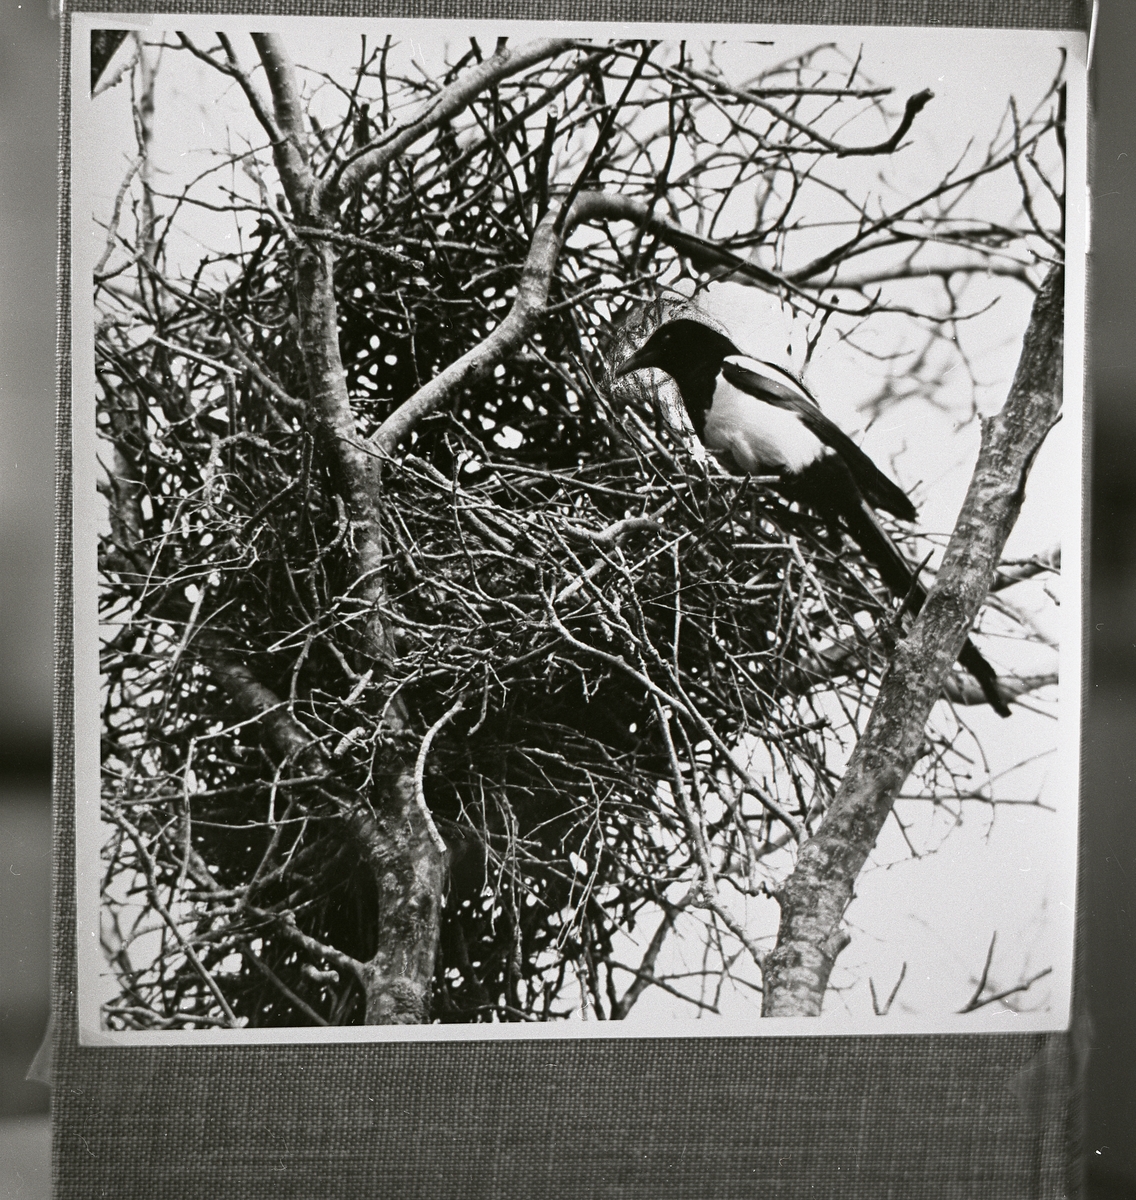 Skata sitter utanför ett fågelbo i ett träd 15 maj 1958.